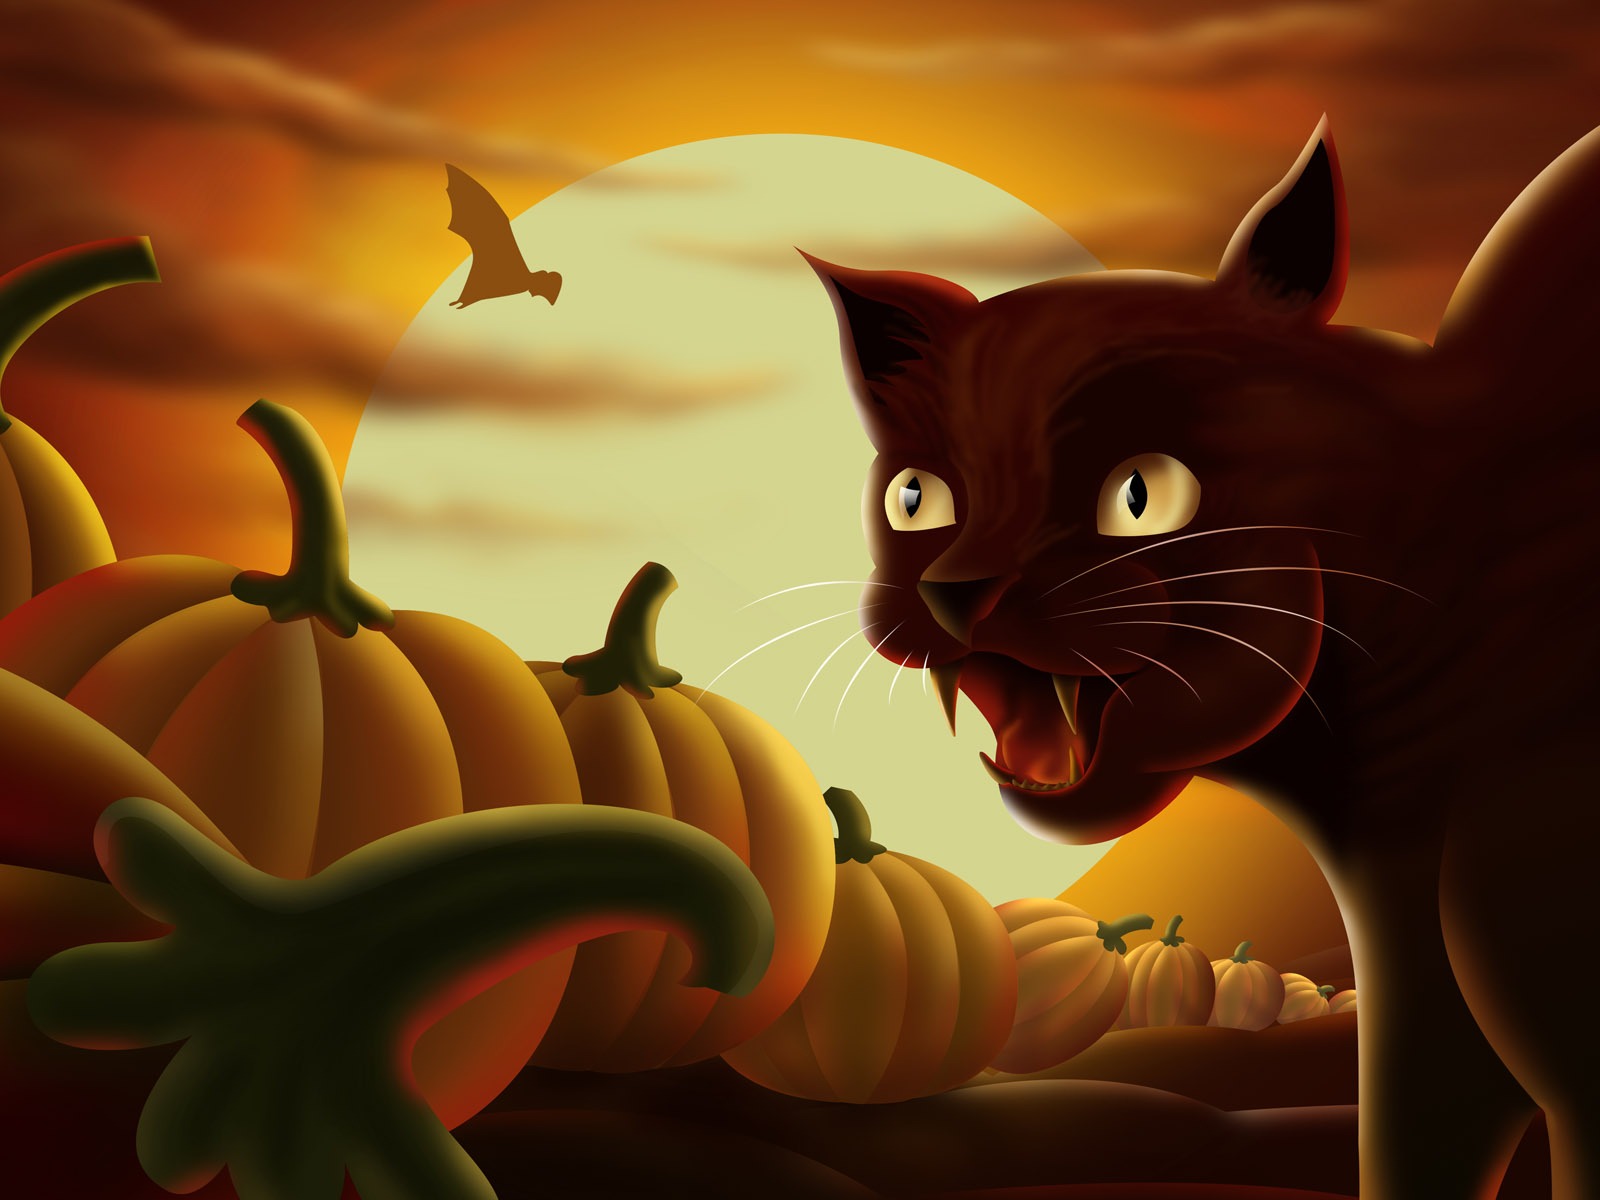 Fondos de Halloween temáticos (5) #5 - 1600x1200